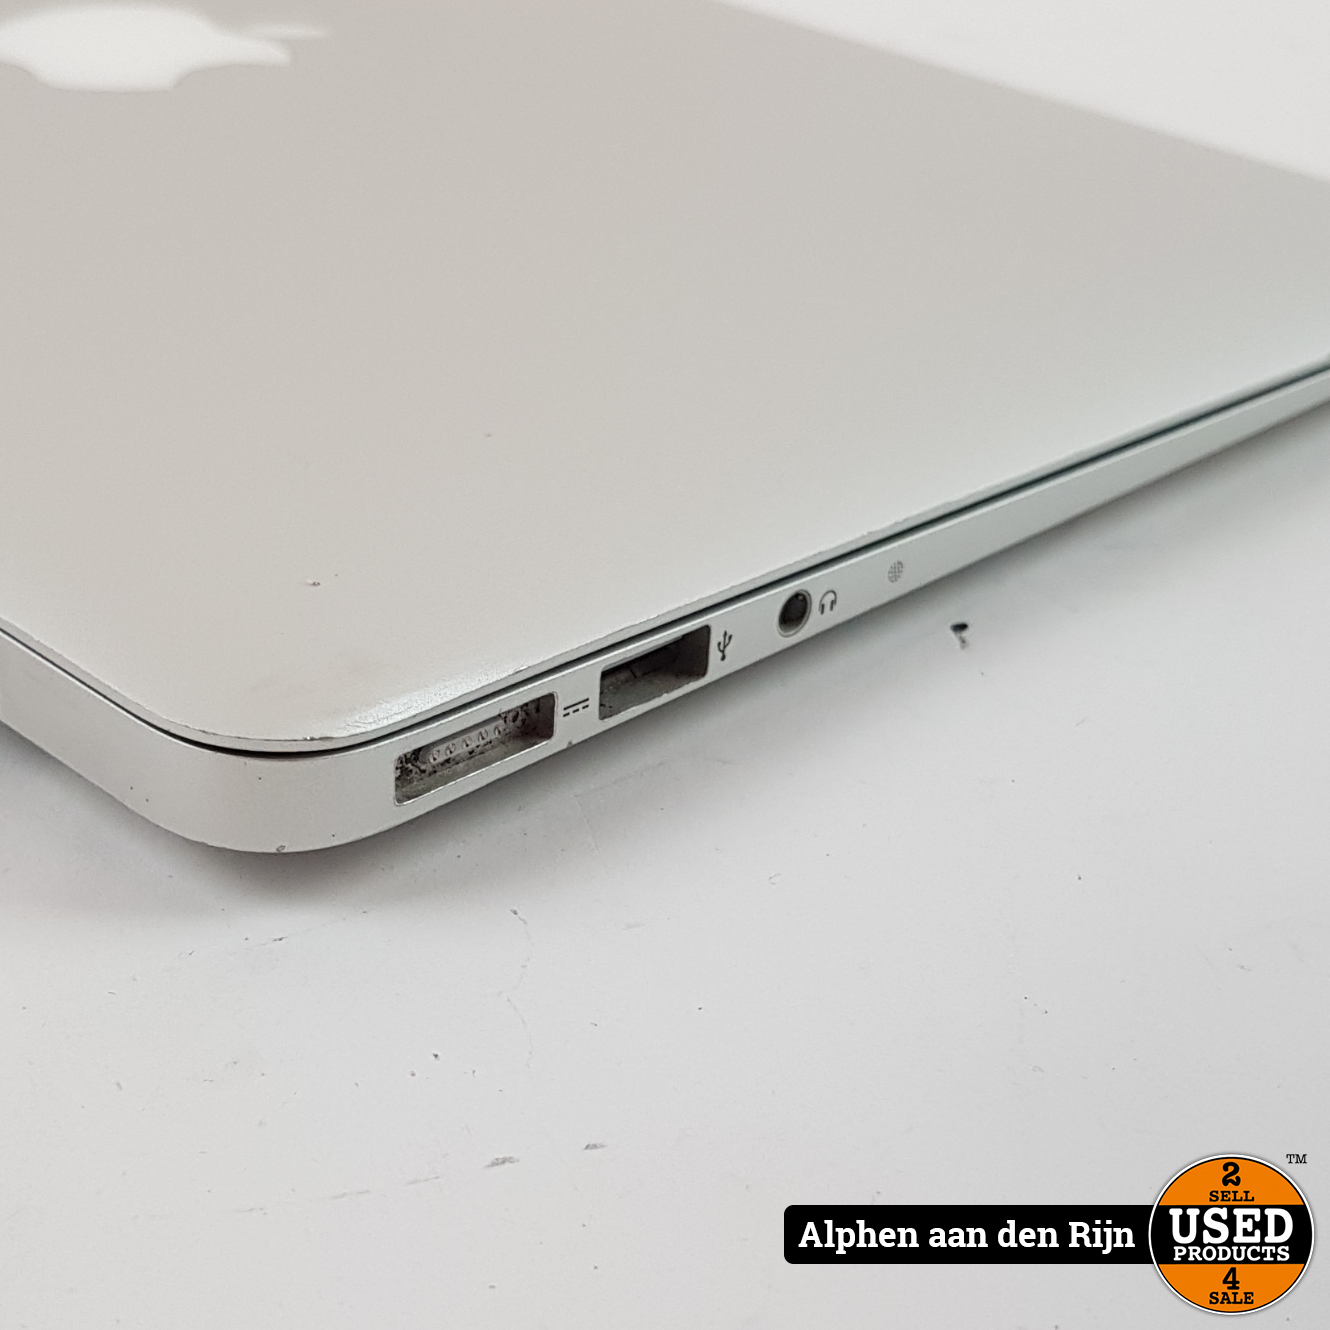 werkgelegenheid Senator plannen Apple MacBook Air 11-inch, Mid 2012 - Used Products Alphen aan den Rijn